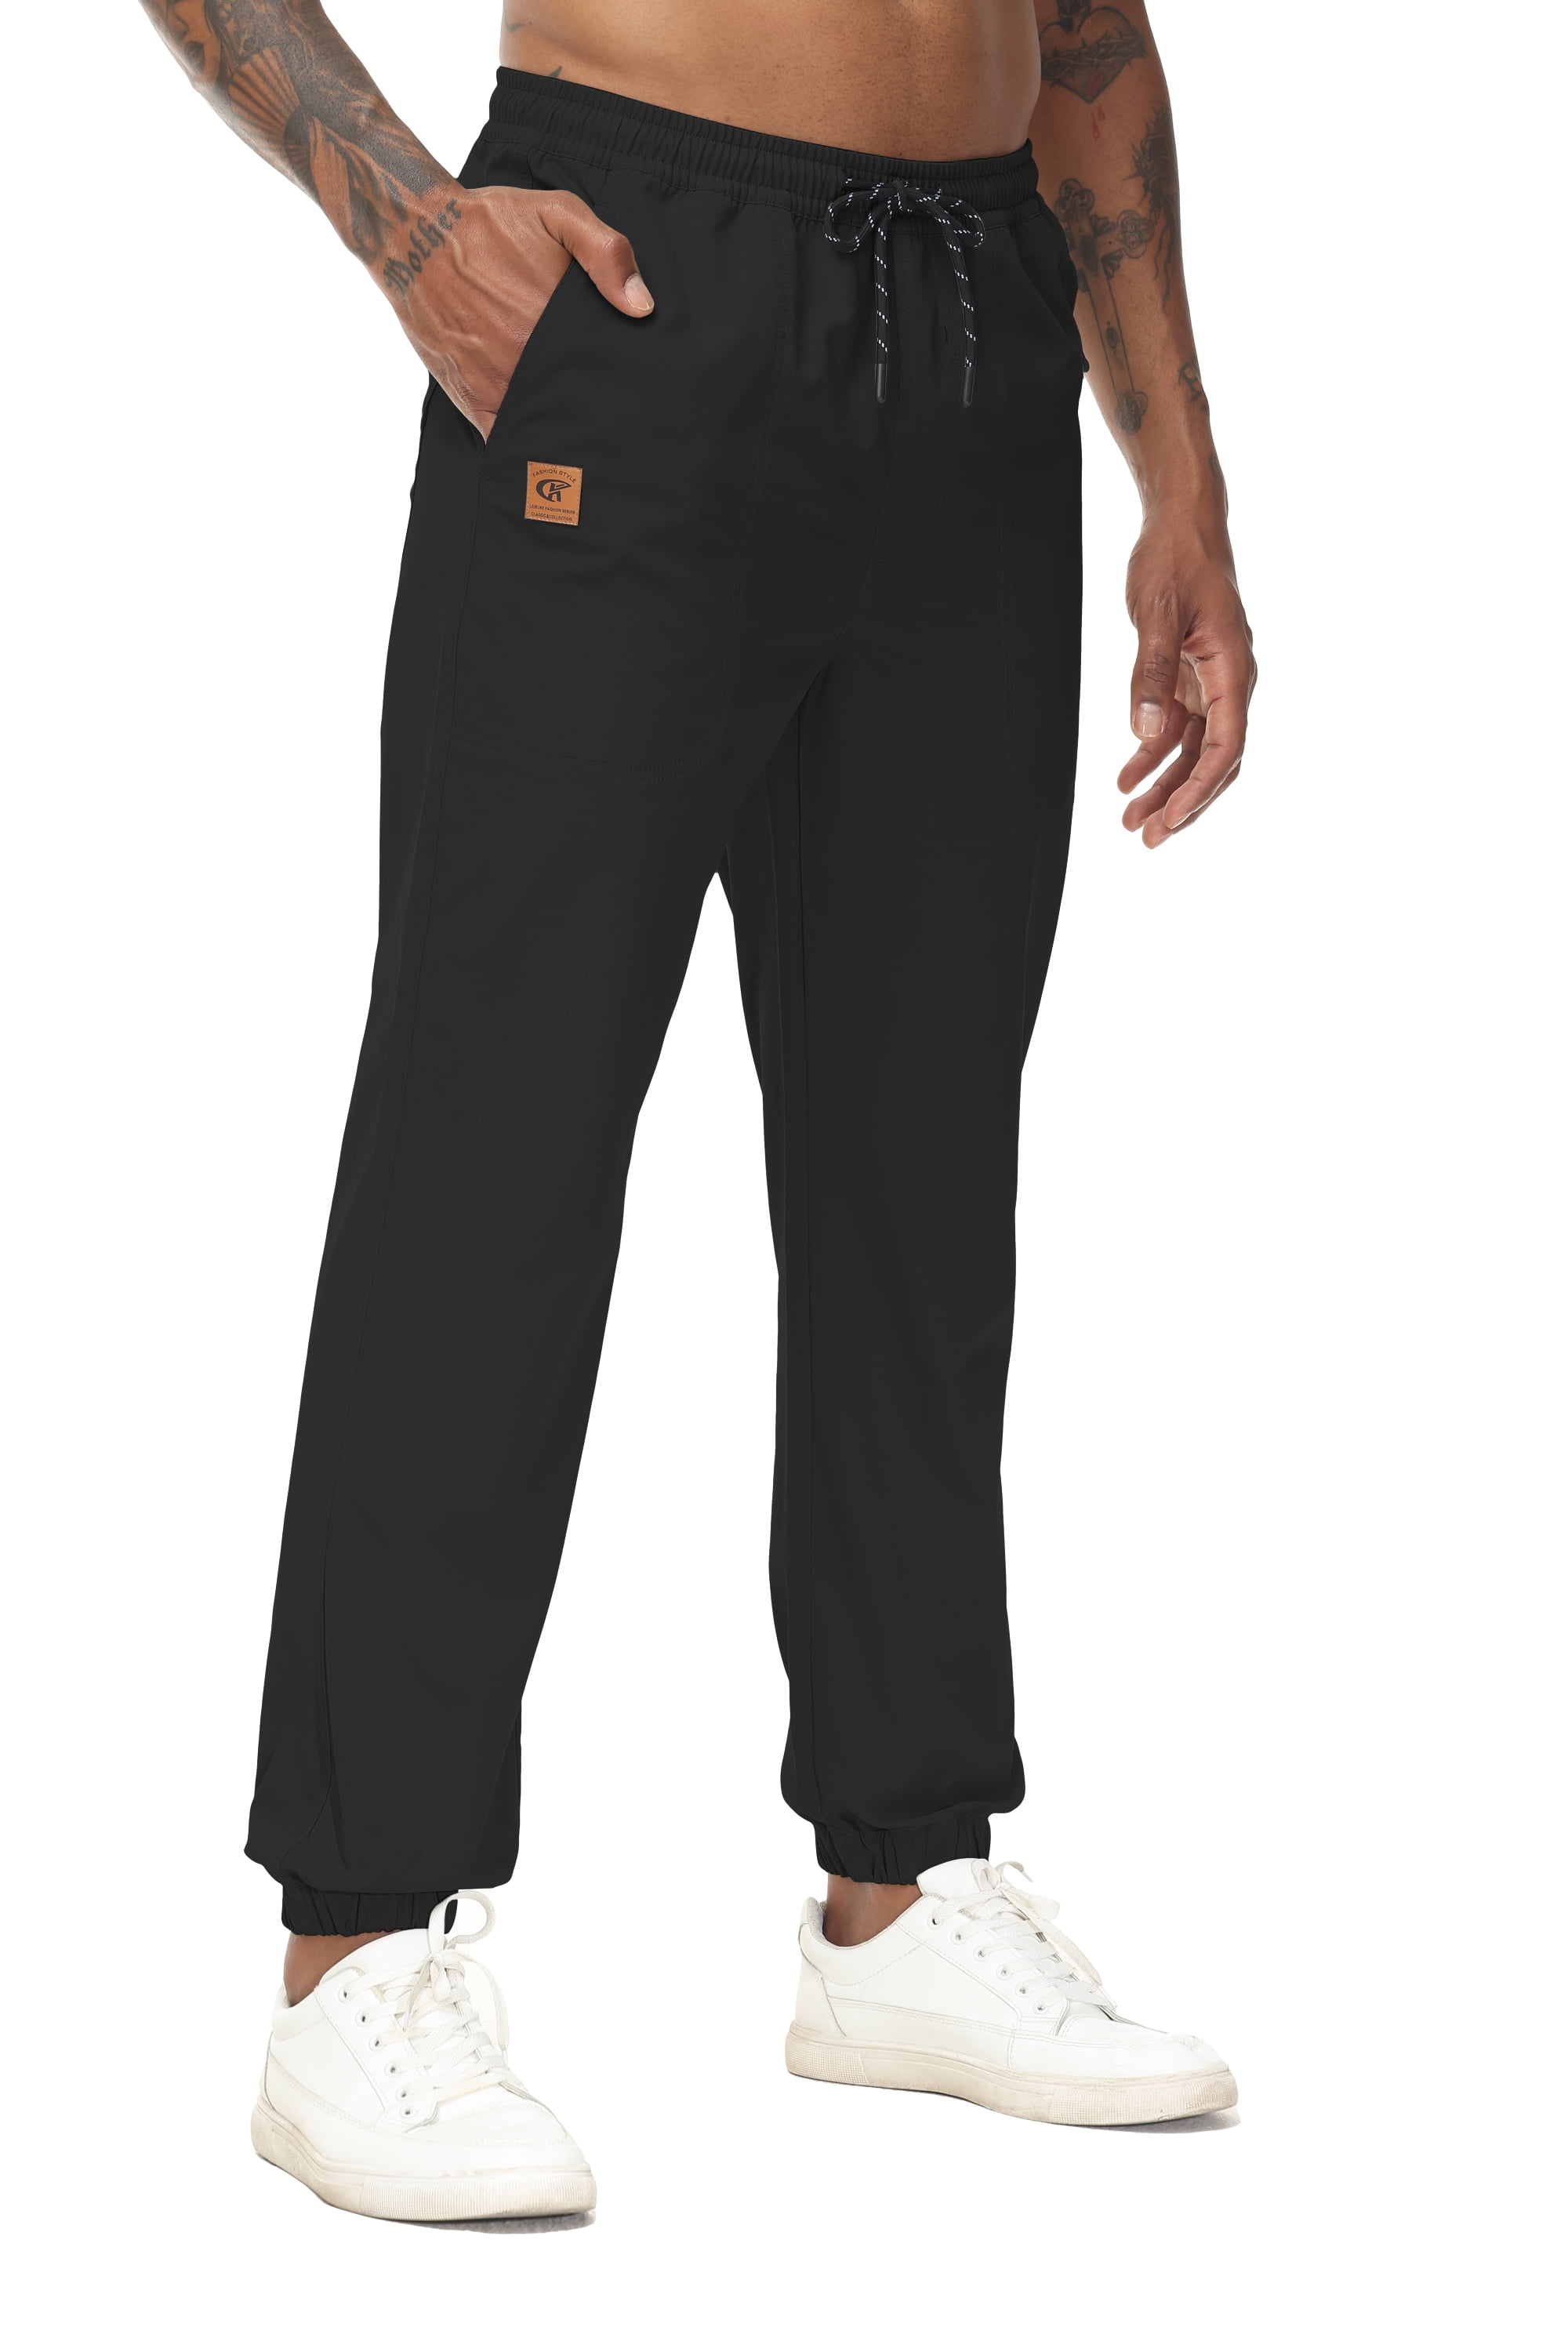 OGLCCG Men's Casual Cotton Sweatpants Ankle-Length Elastic Waist Loose Fit  Lounge Pants Trendy Solid Color Sports Pants 